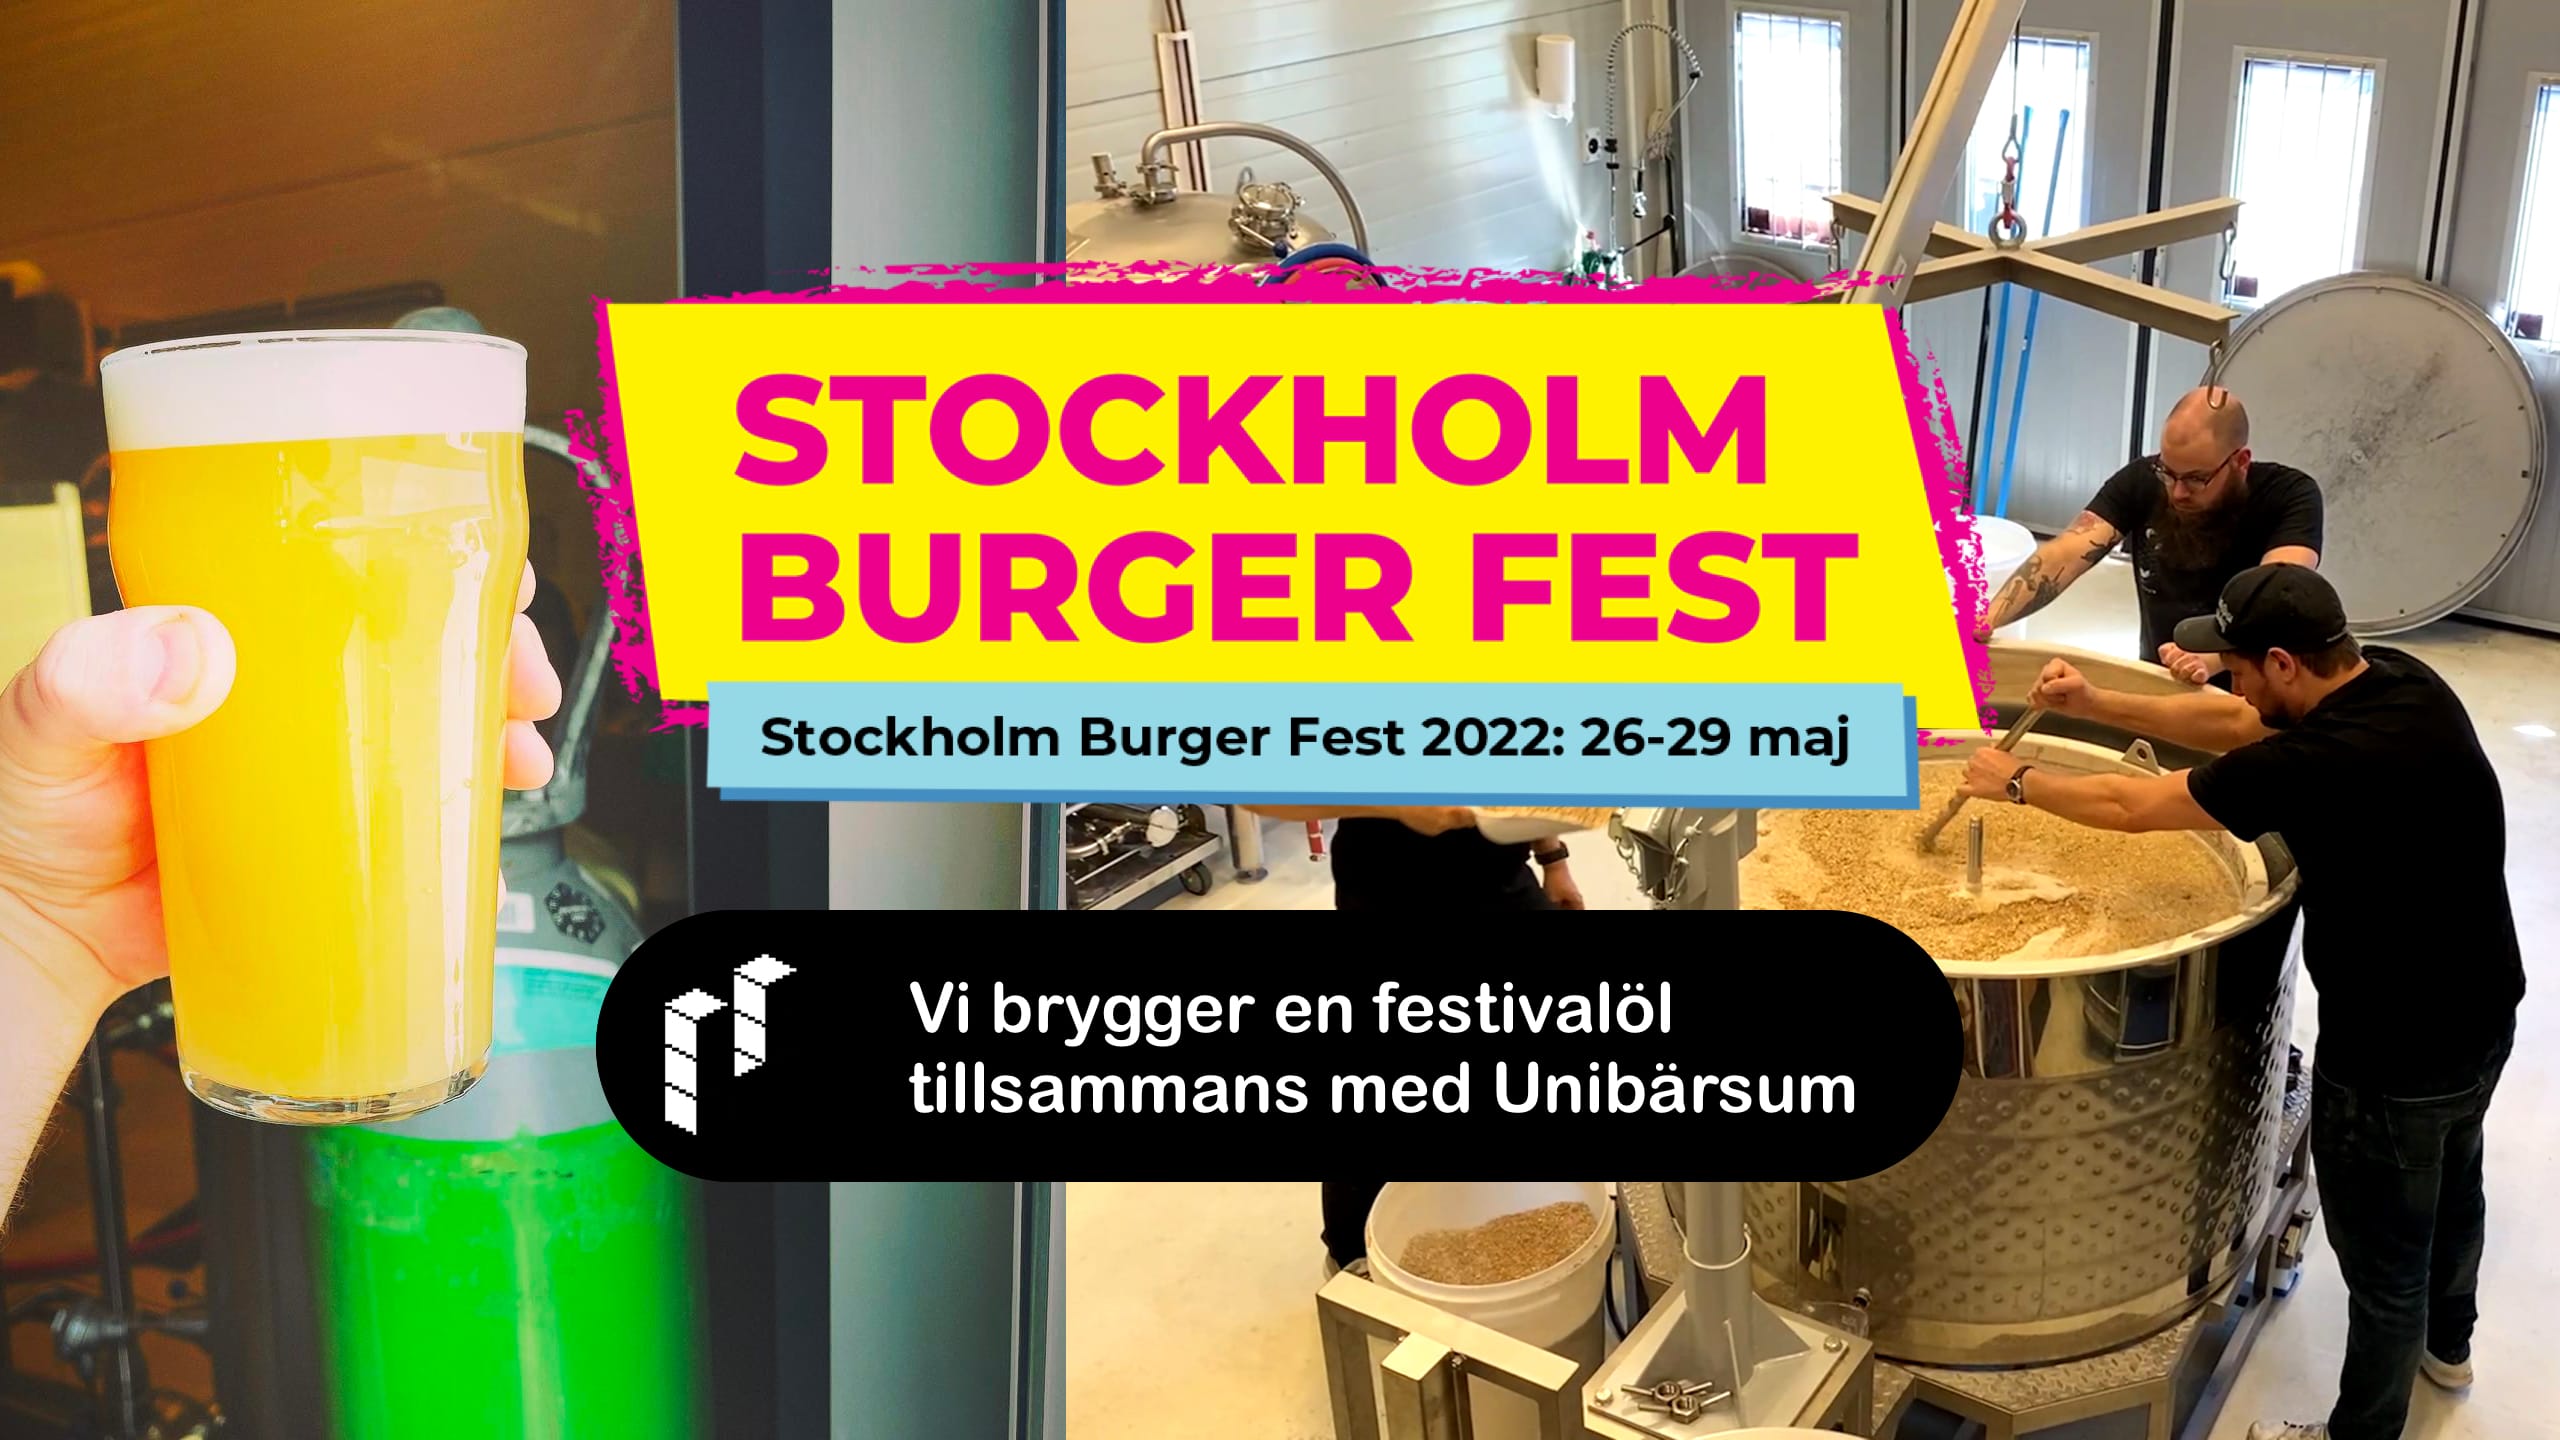 Youtube: Vi brygger en festivalöl till Stockholm Burger Fest 2022